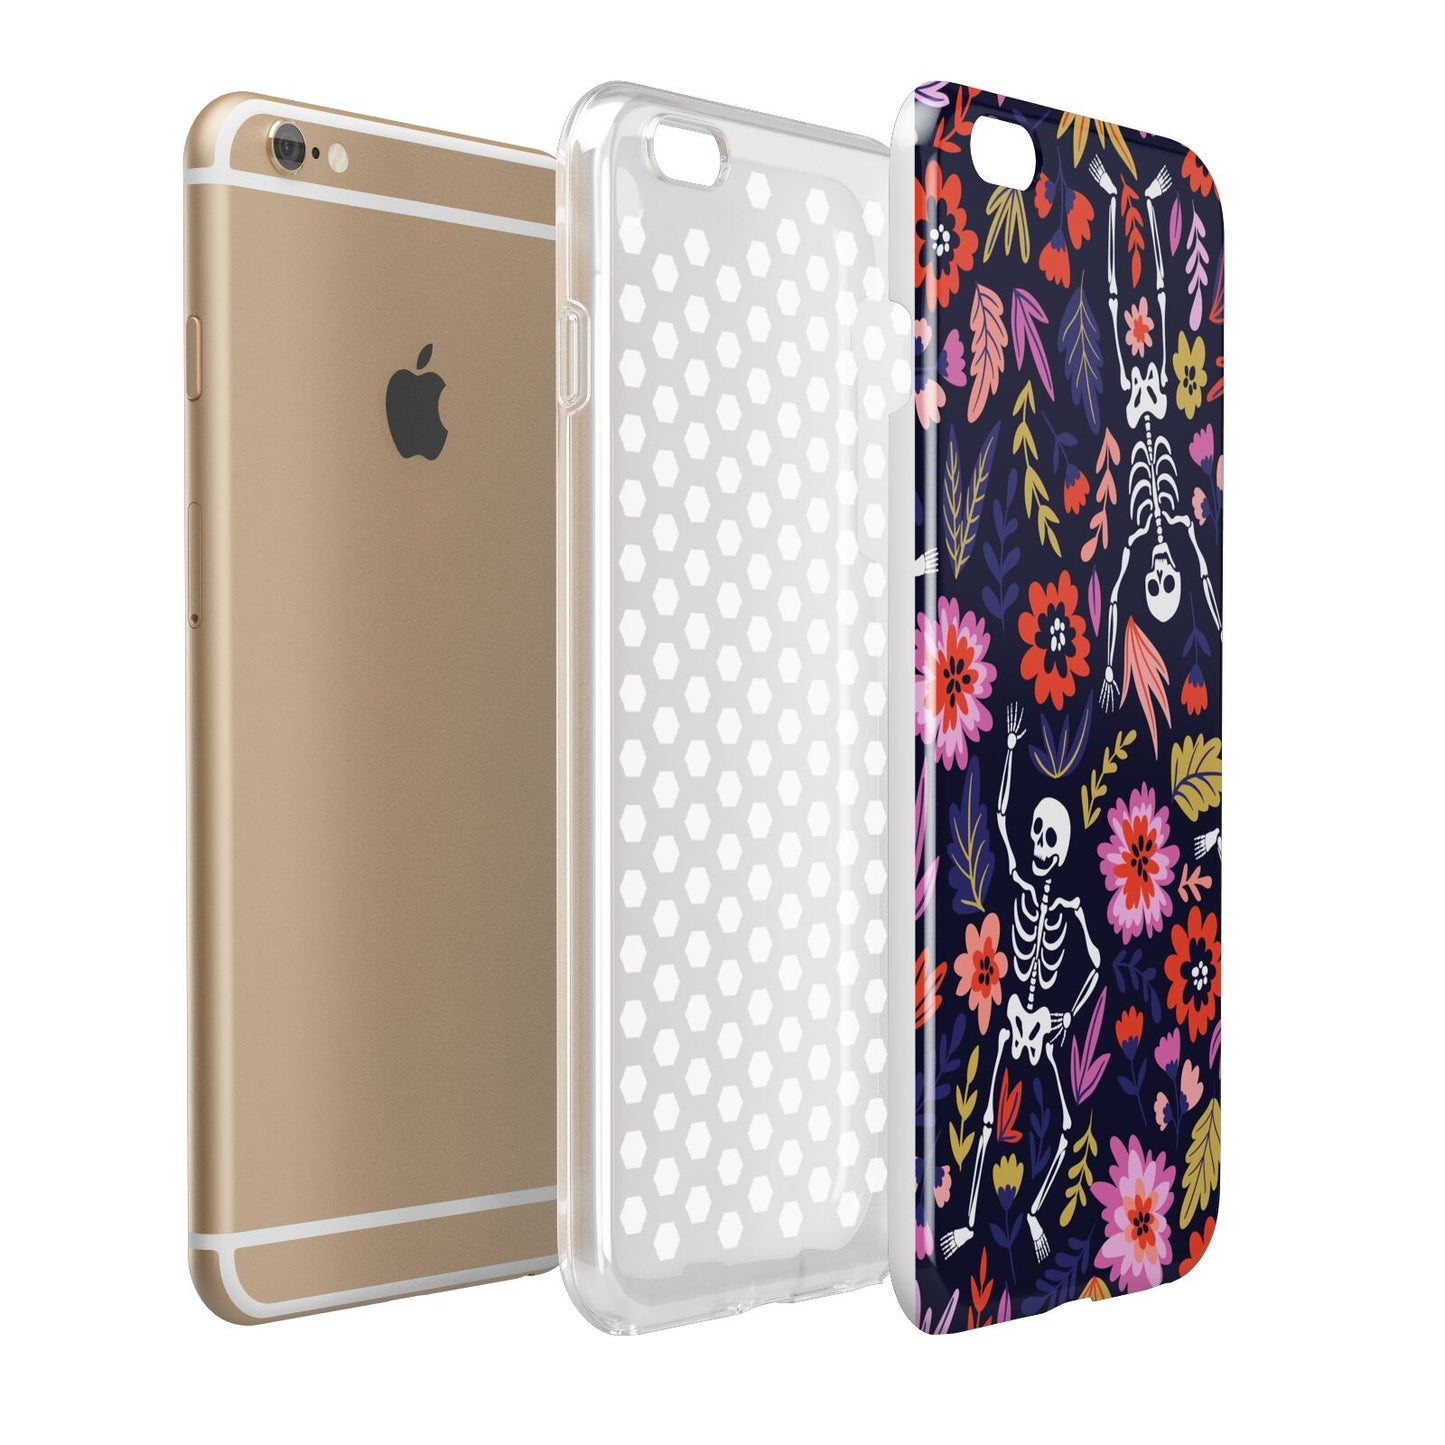 Floral Skeleton Apple iPhone 6 Plus 3D Tough Case Expand Detail Image